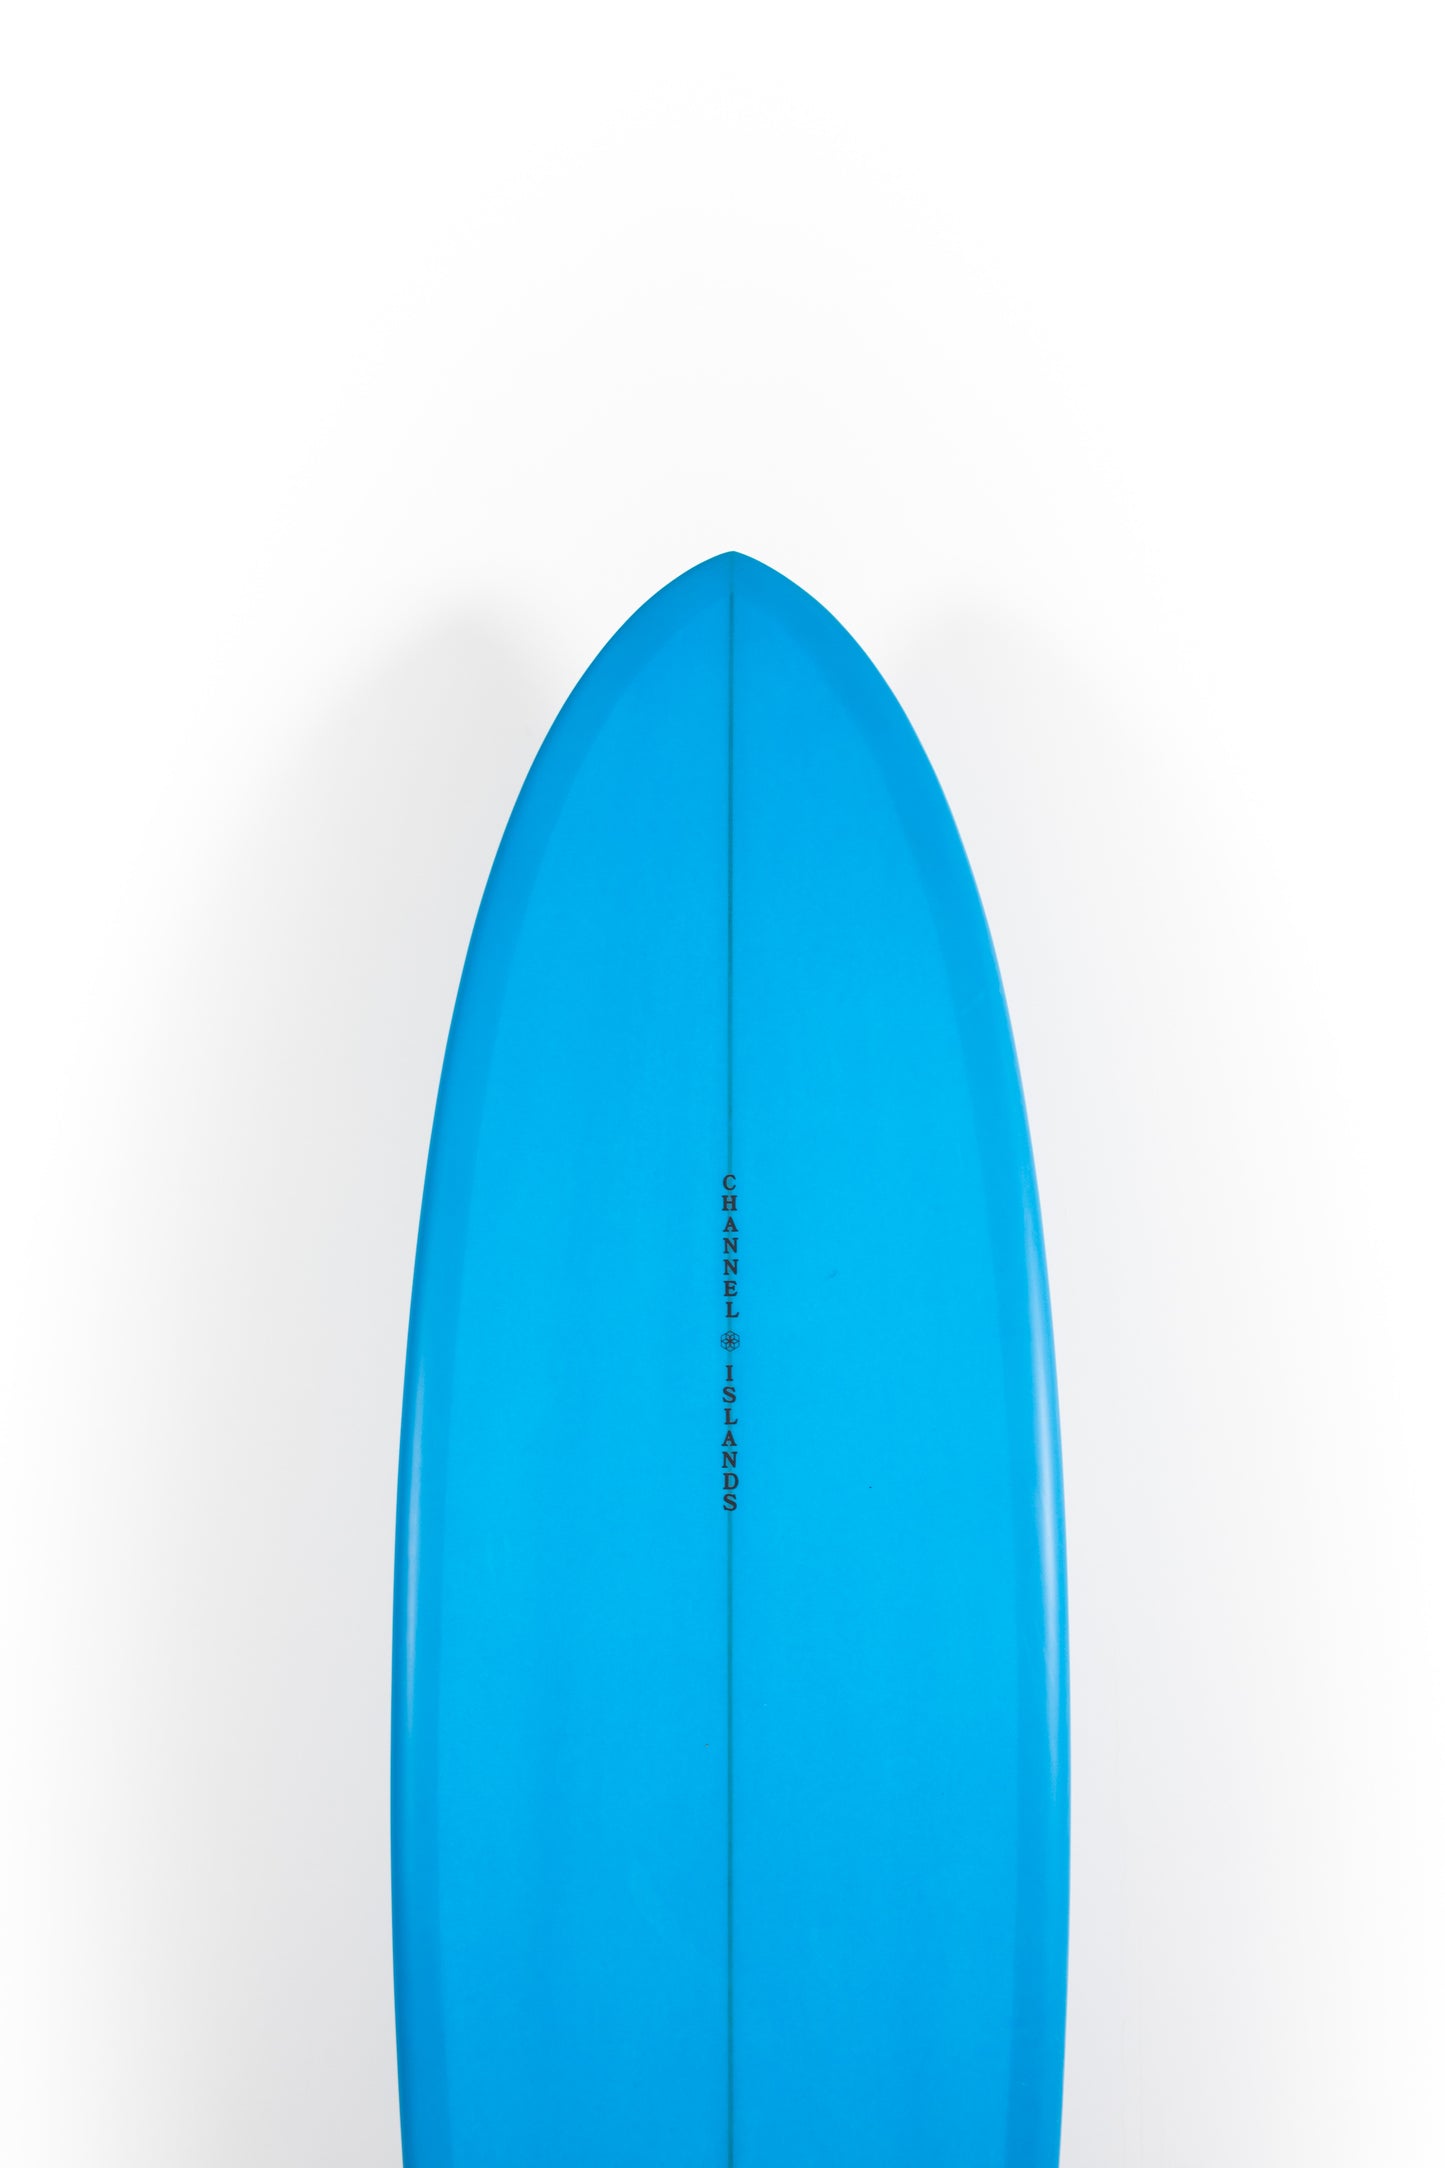 
                  
                    Pukas Surf shop - Channel Islands - CI MID - 6'10" x 20 7/8 x 2 11/16 - 42,3L - CI24508
                  
                